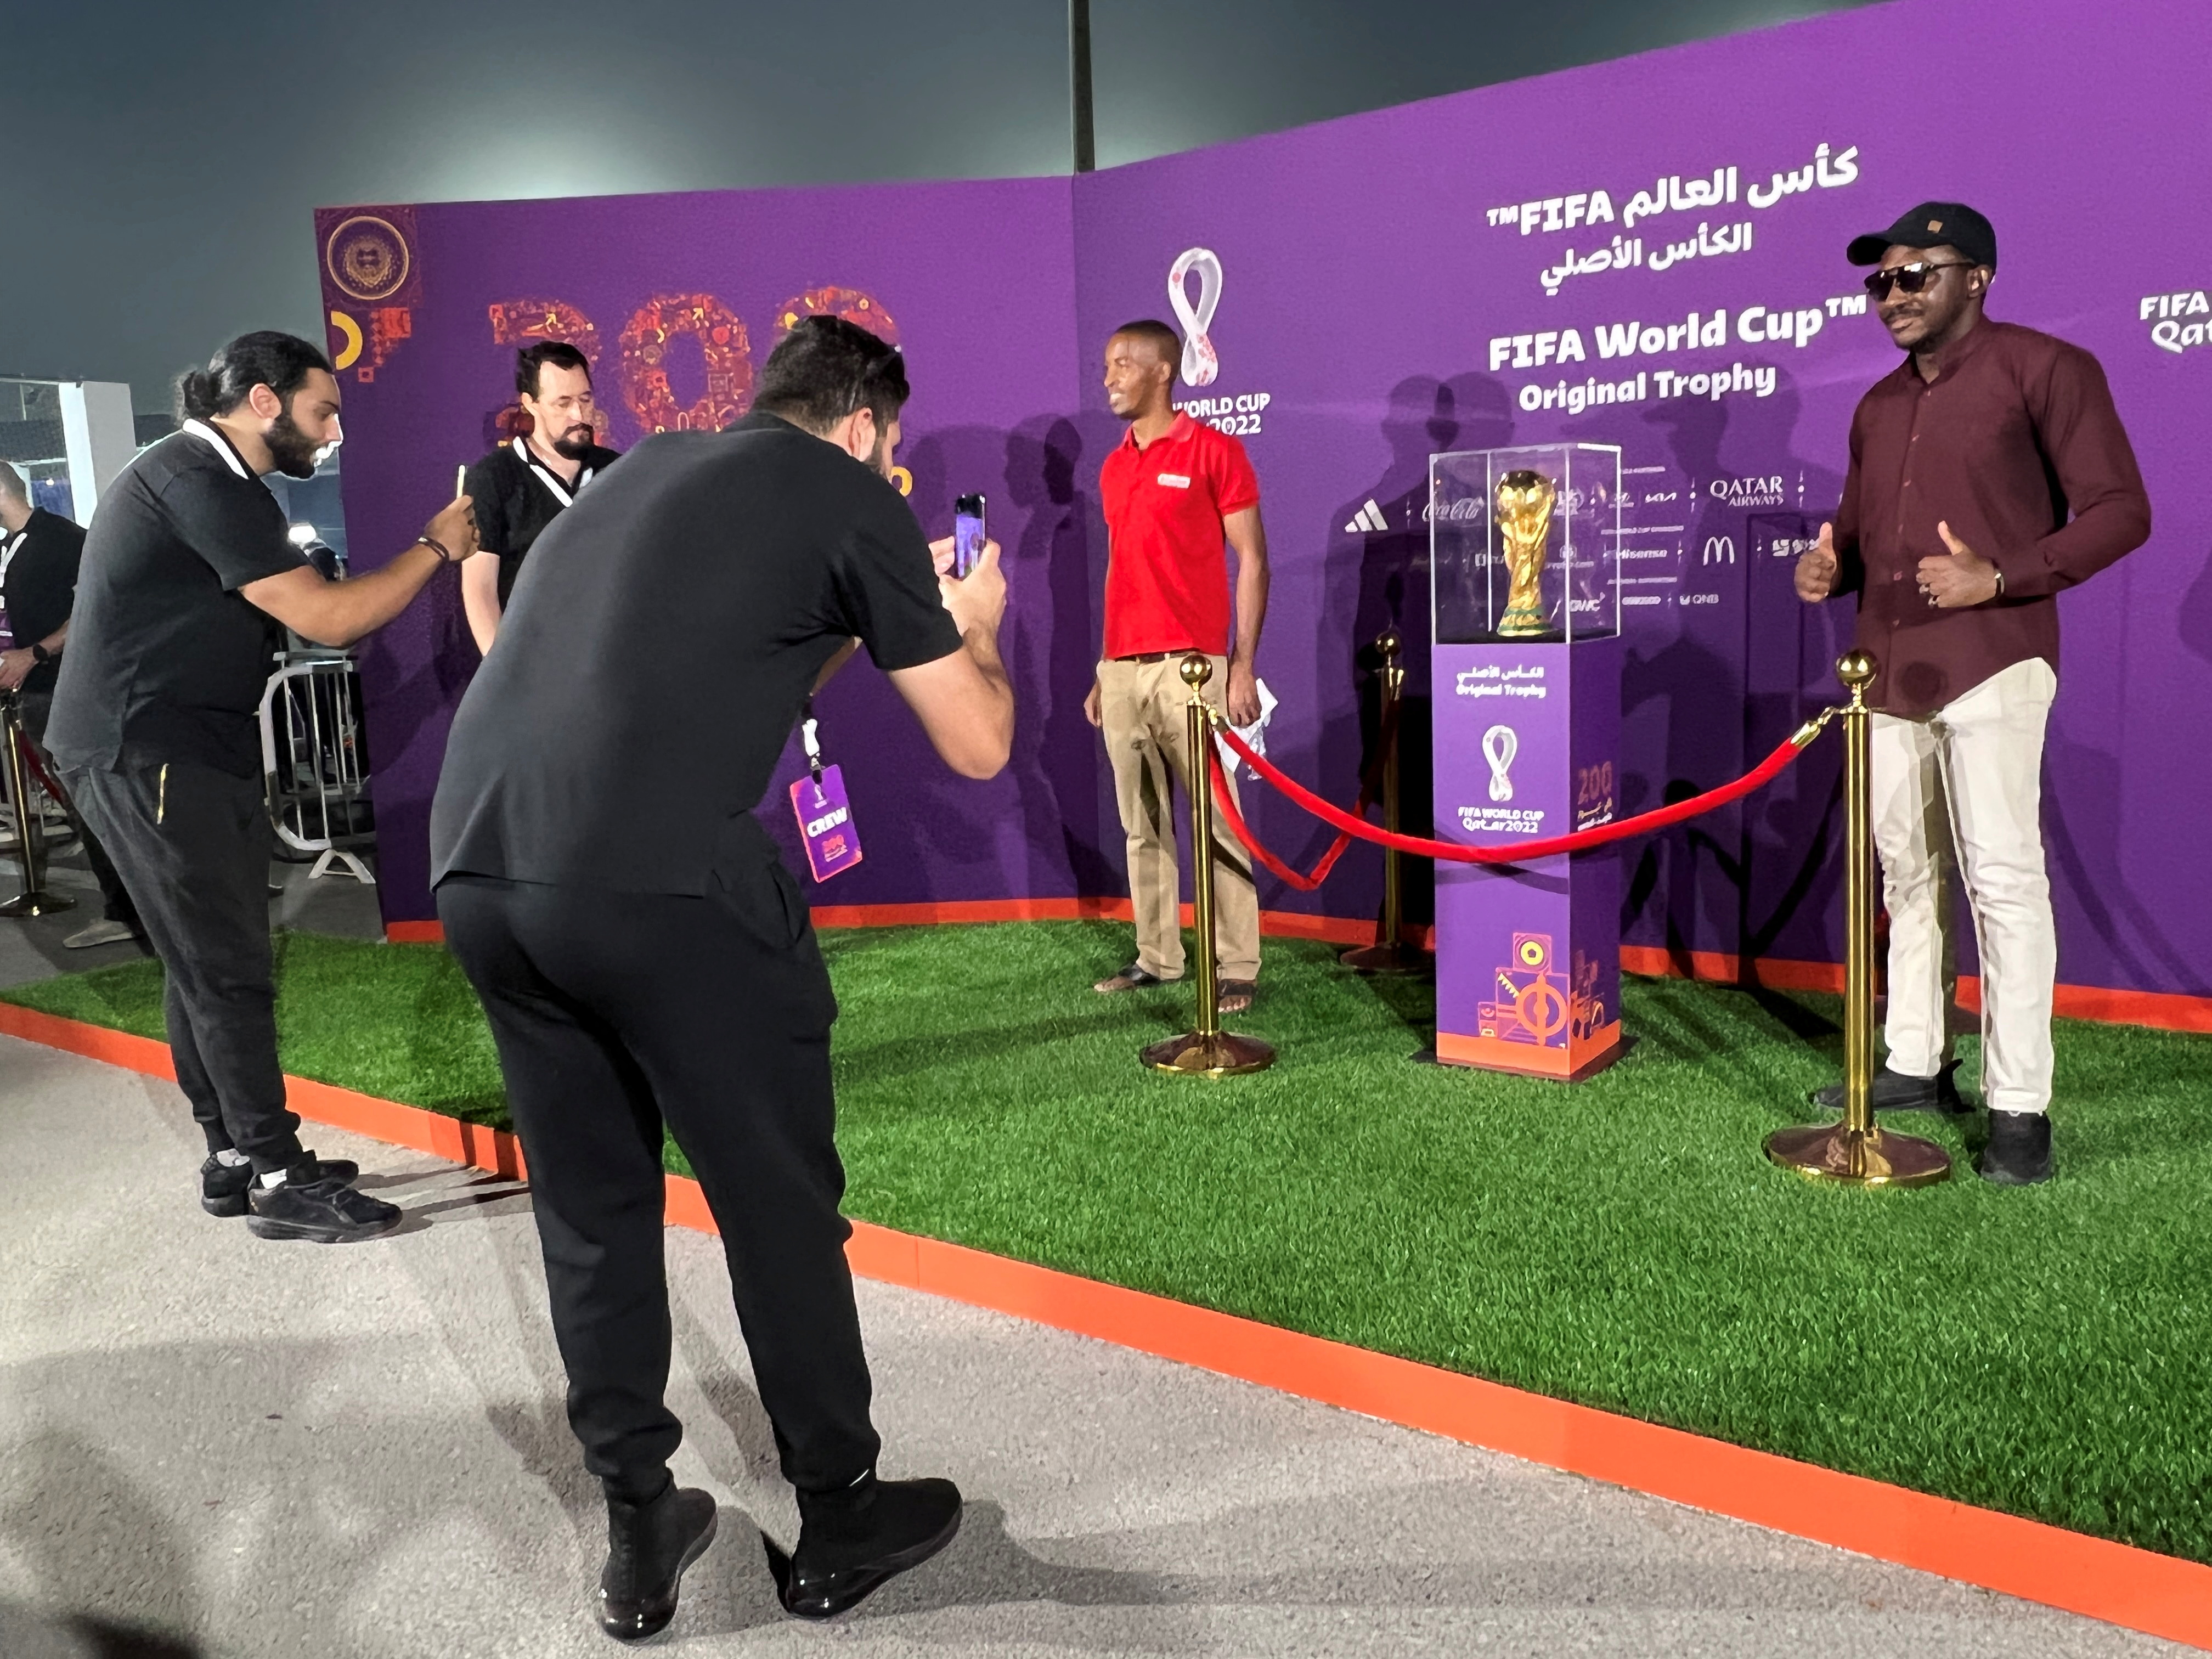 En Doha se espera la llegada de 1,2 millones de fanáticos durante el Mundial (Foto: REUTERS)